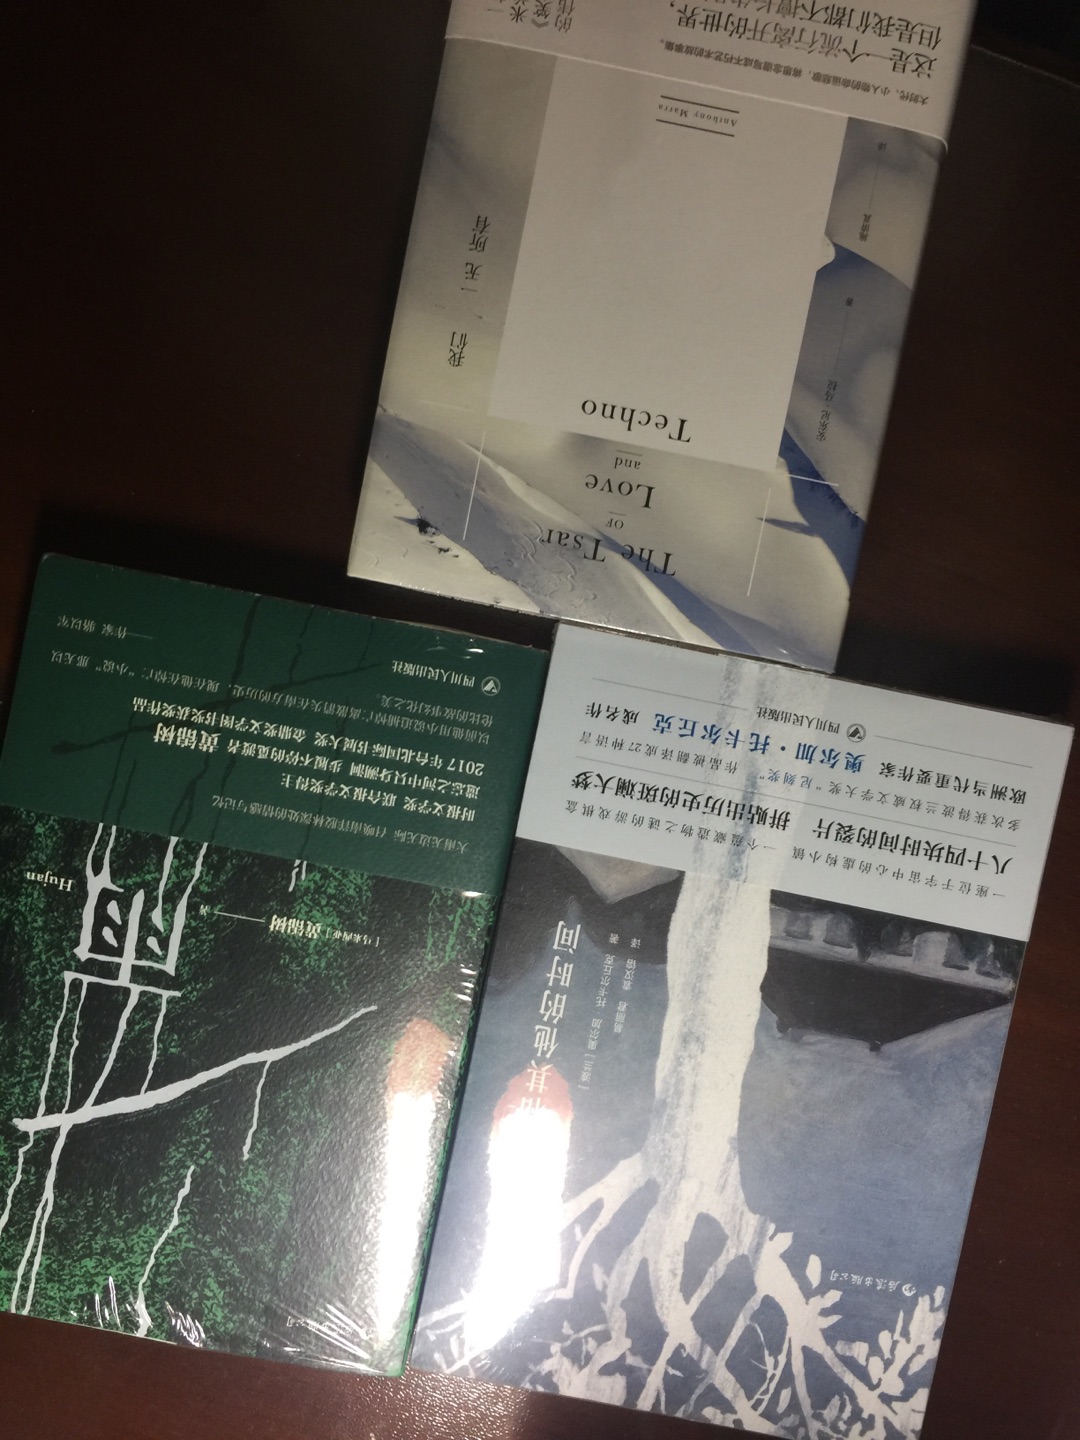 有认识的人说“华语文学”和“中国文学”不是一个含义，这本书恰可以体现这种微妙的差别。中国少有的热带气候，下个不停的雨，奇妙的家族…有种东南亚的气质，又让我回想起拉美